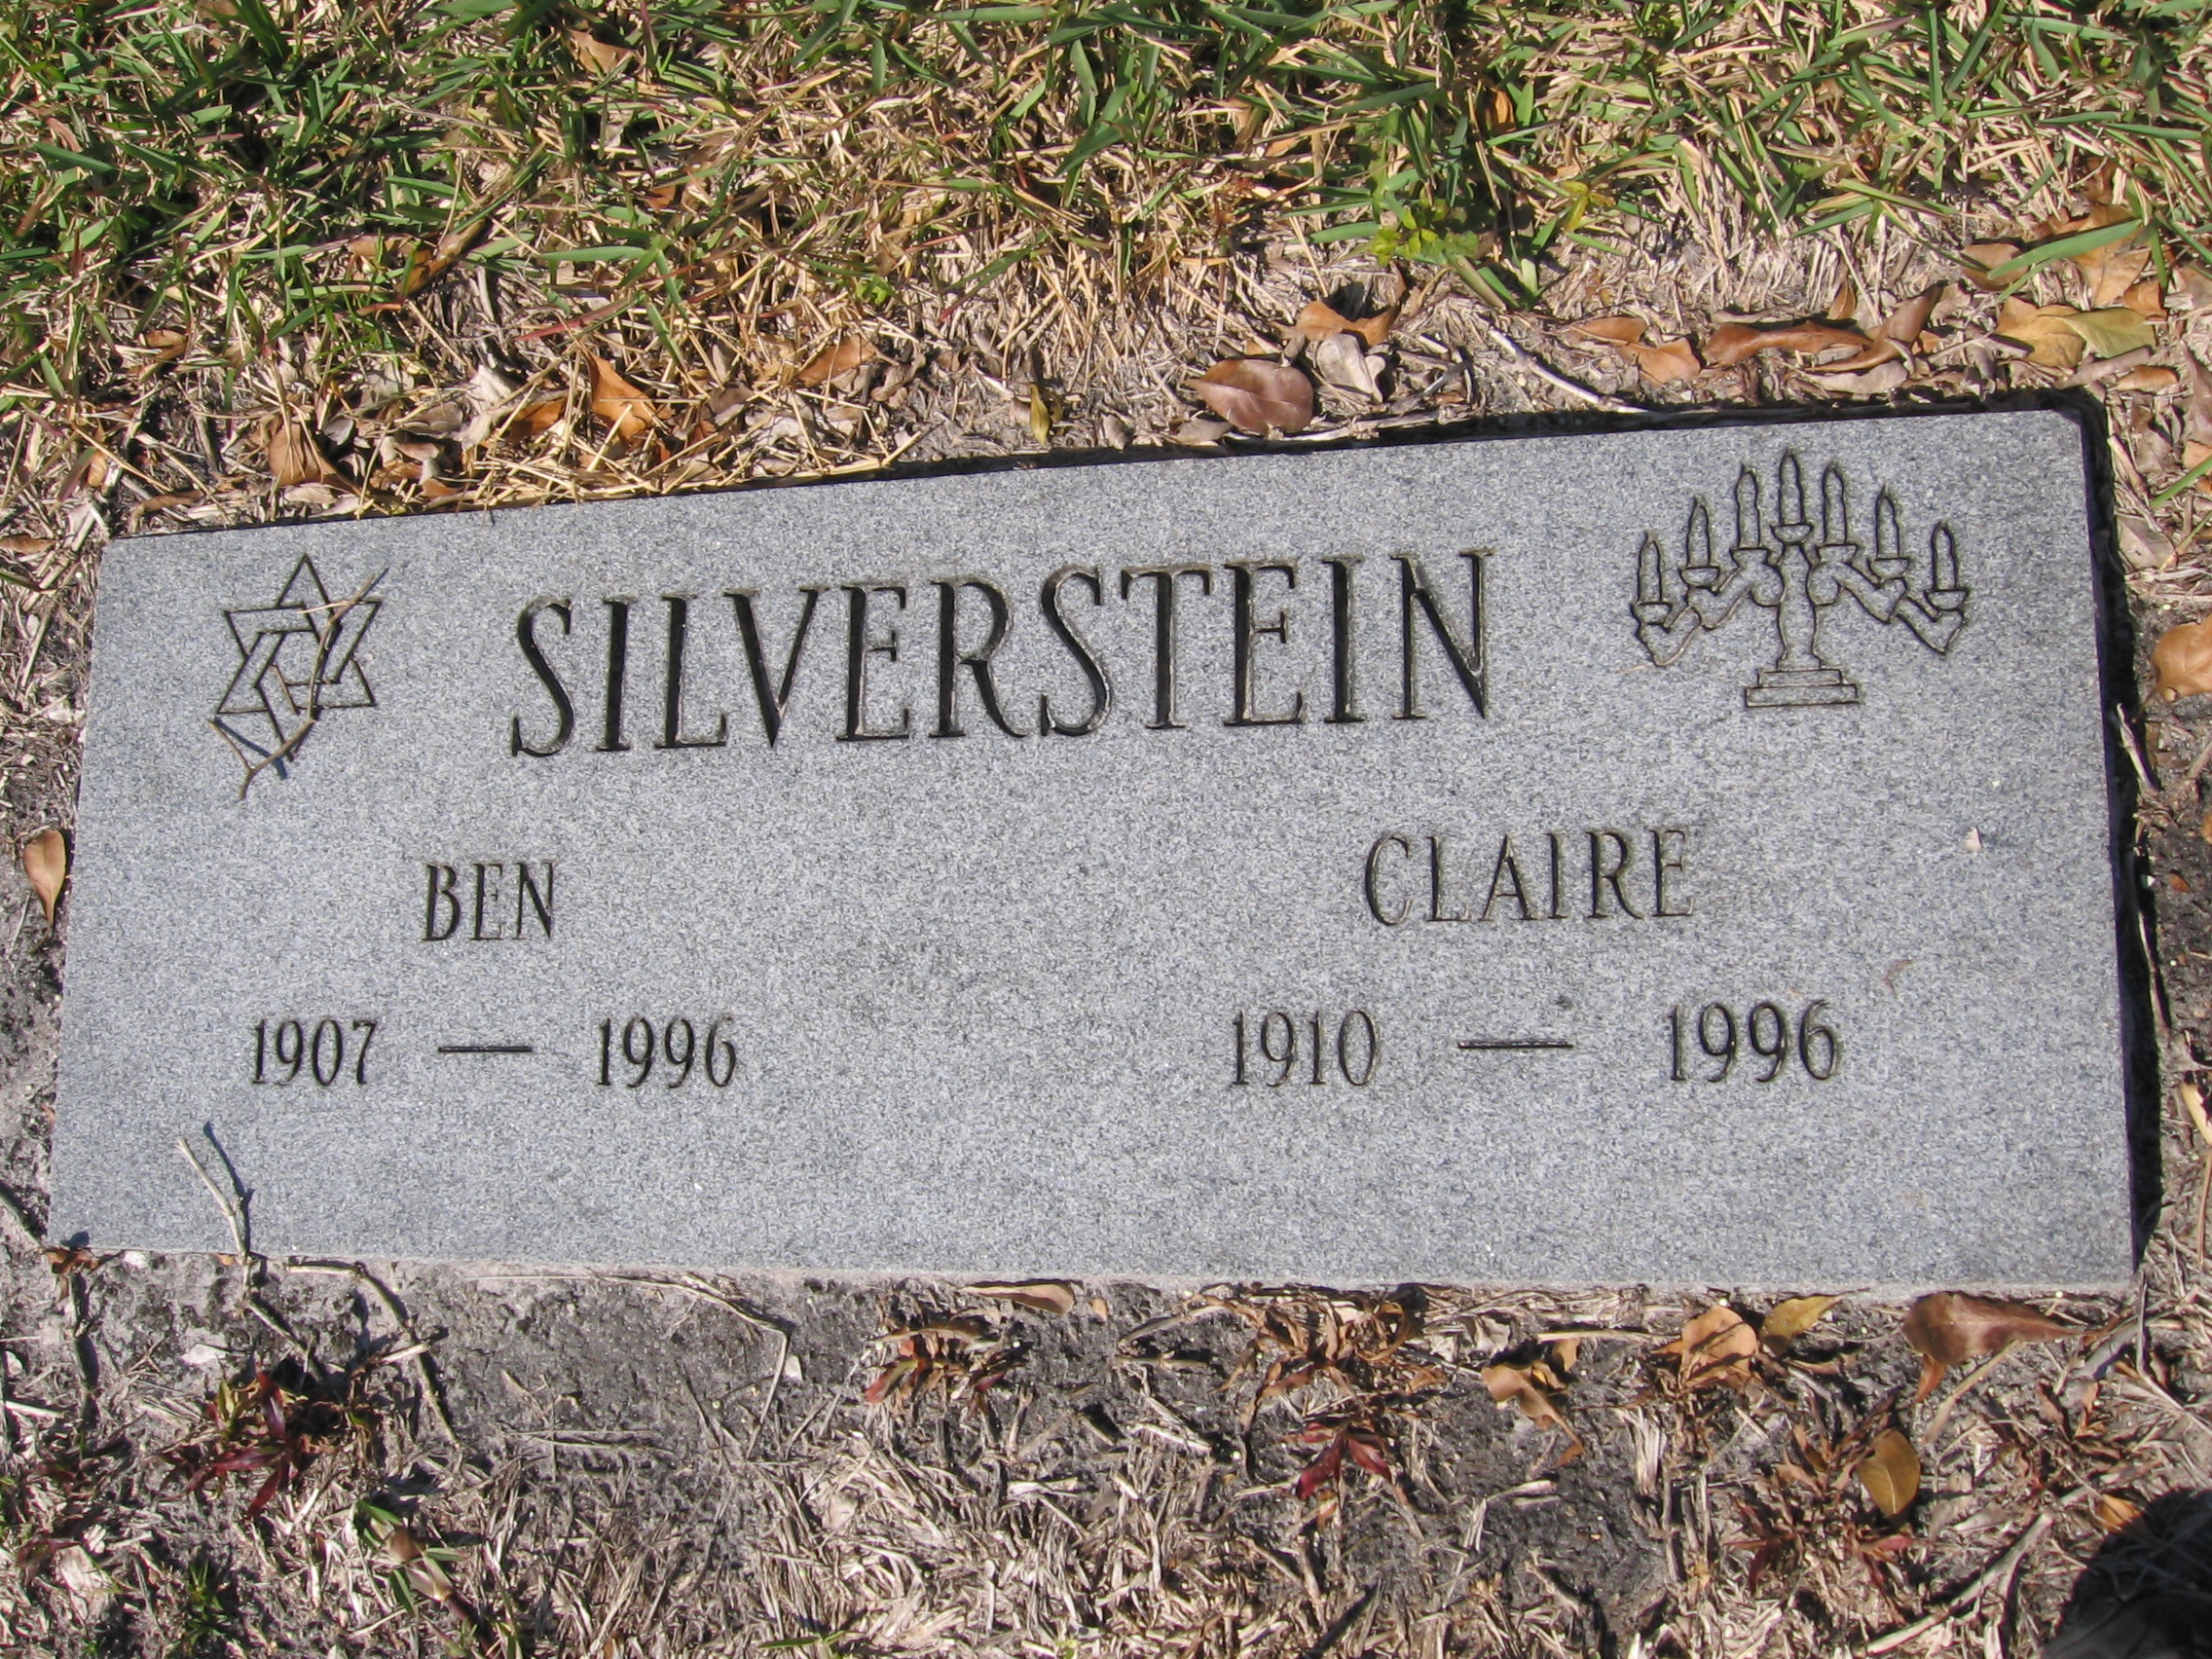 Claire Silverstein